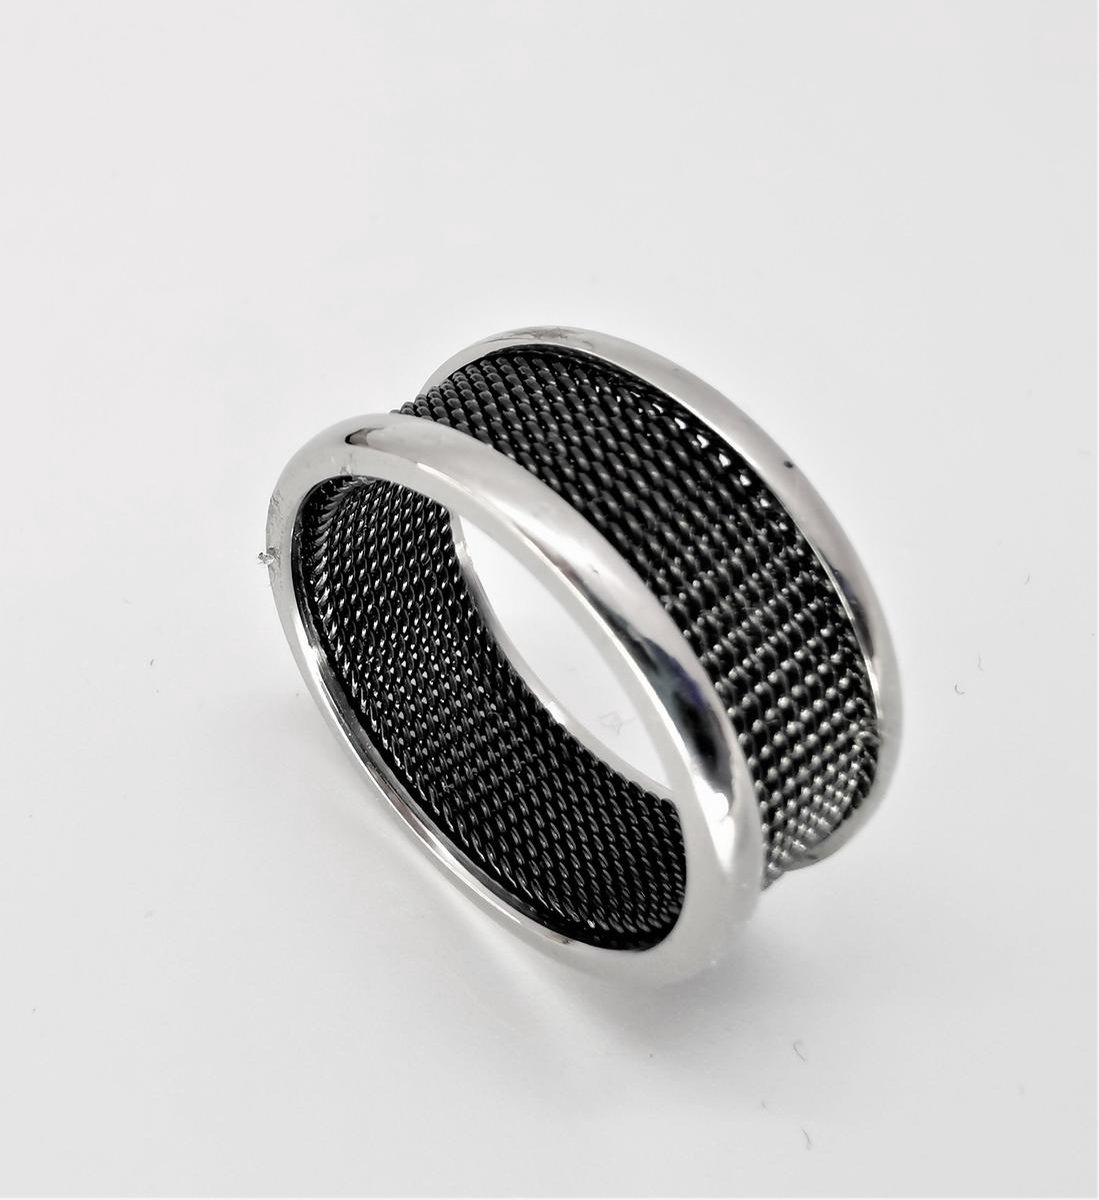 Edelstaal brede ring met zwart gaas in midden, beide zijkant iets hoog zilverkleur, door zwart in combinatie met zilver rand maakt deze ring een chique uitstraling. Maat 18. - Lili 41